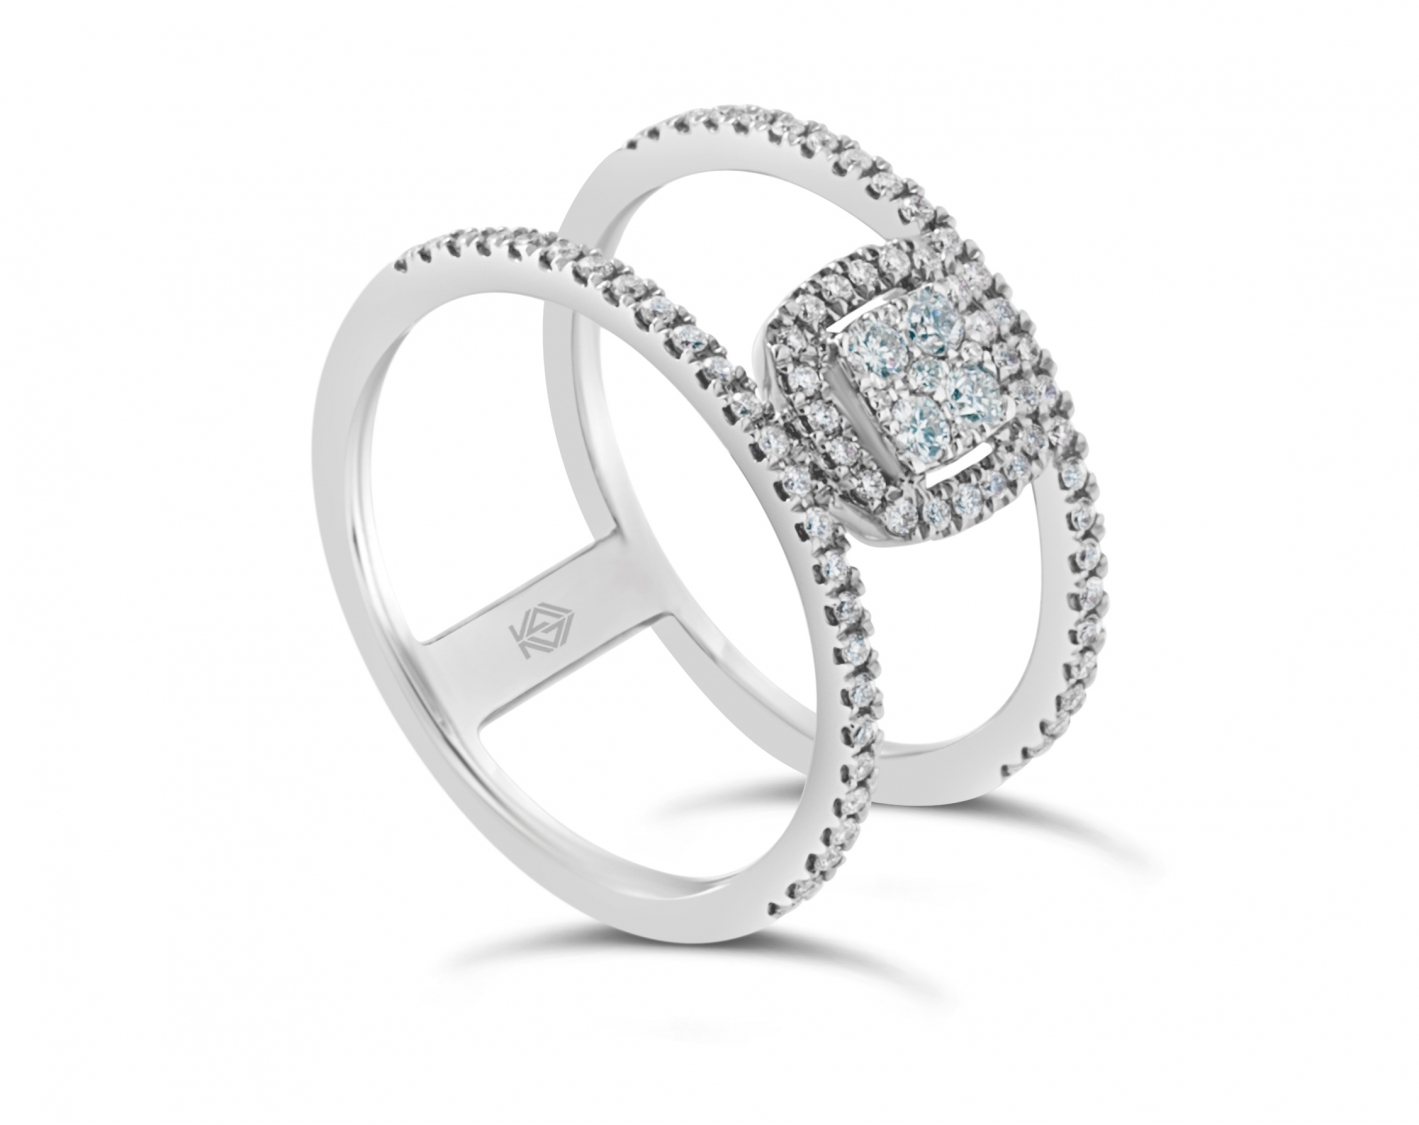 18k rose gold halo illusion set round shaped diamond engagement ring Photos & images